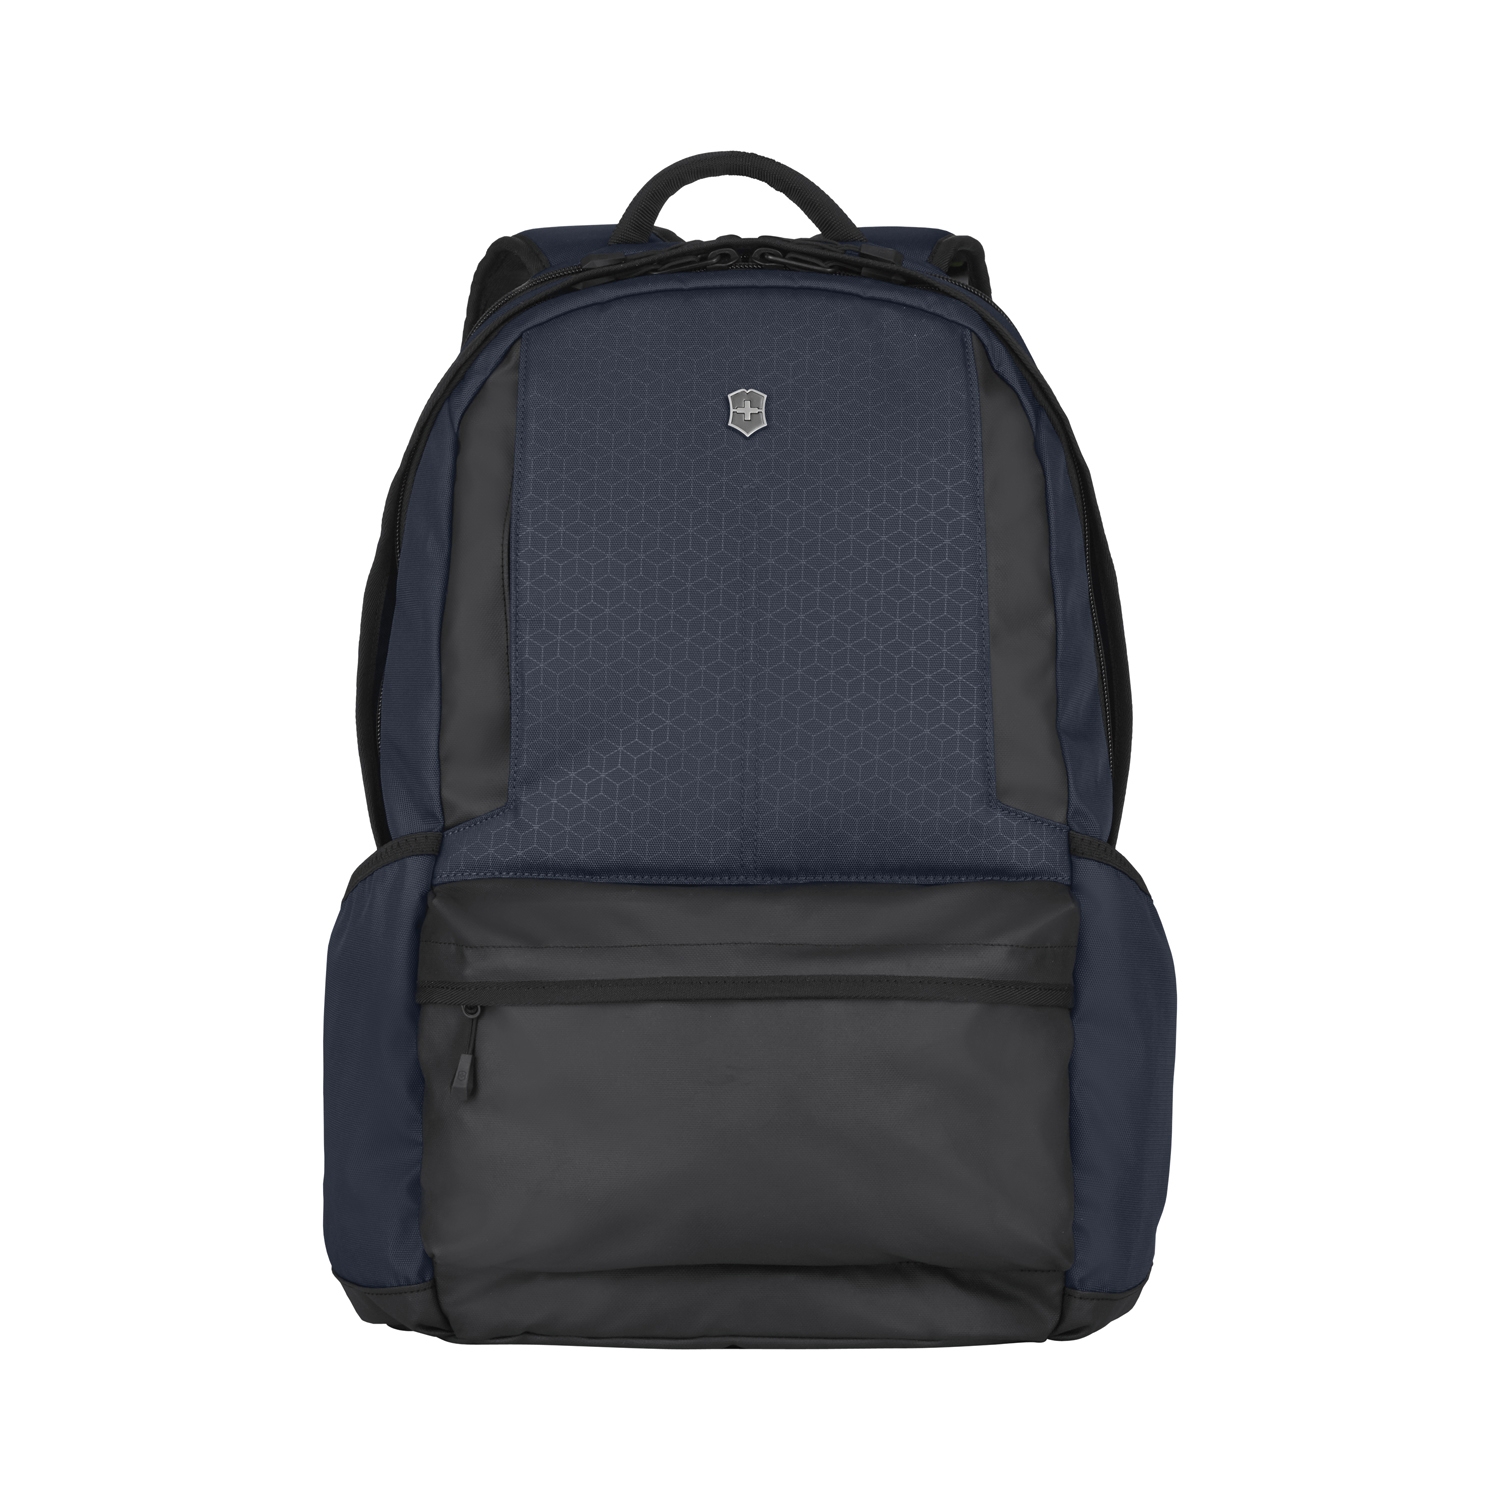 Рюкзак VICTORINOX Altmont Original Laptop Backpack 15,6'', синий, 100% полиэстер, 32x21x48 см, 22 л, синий